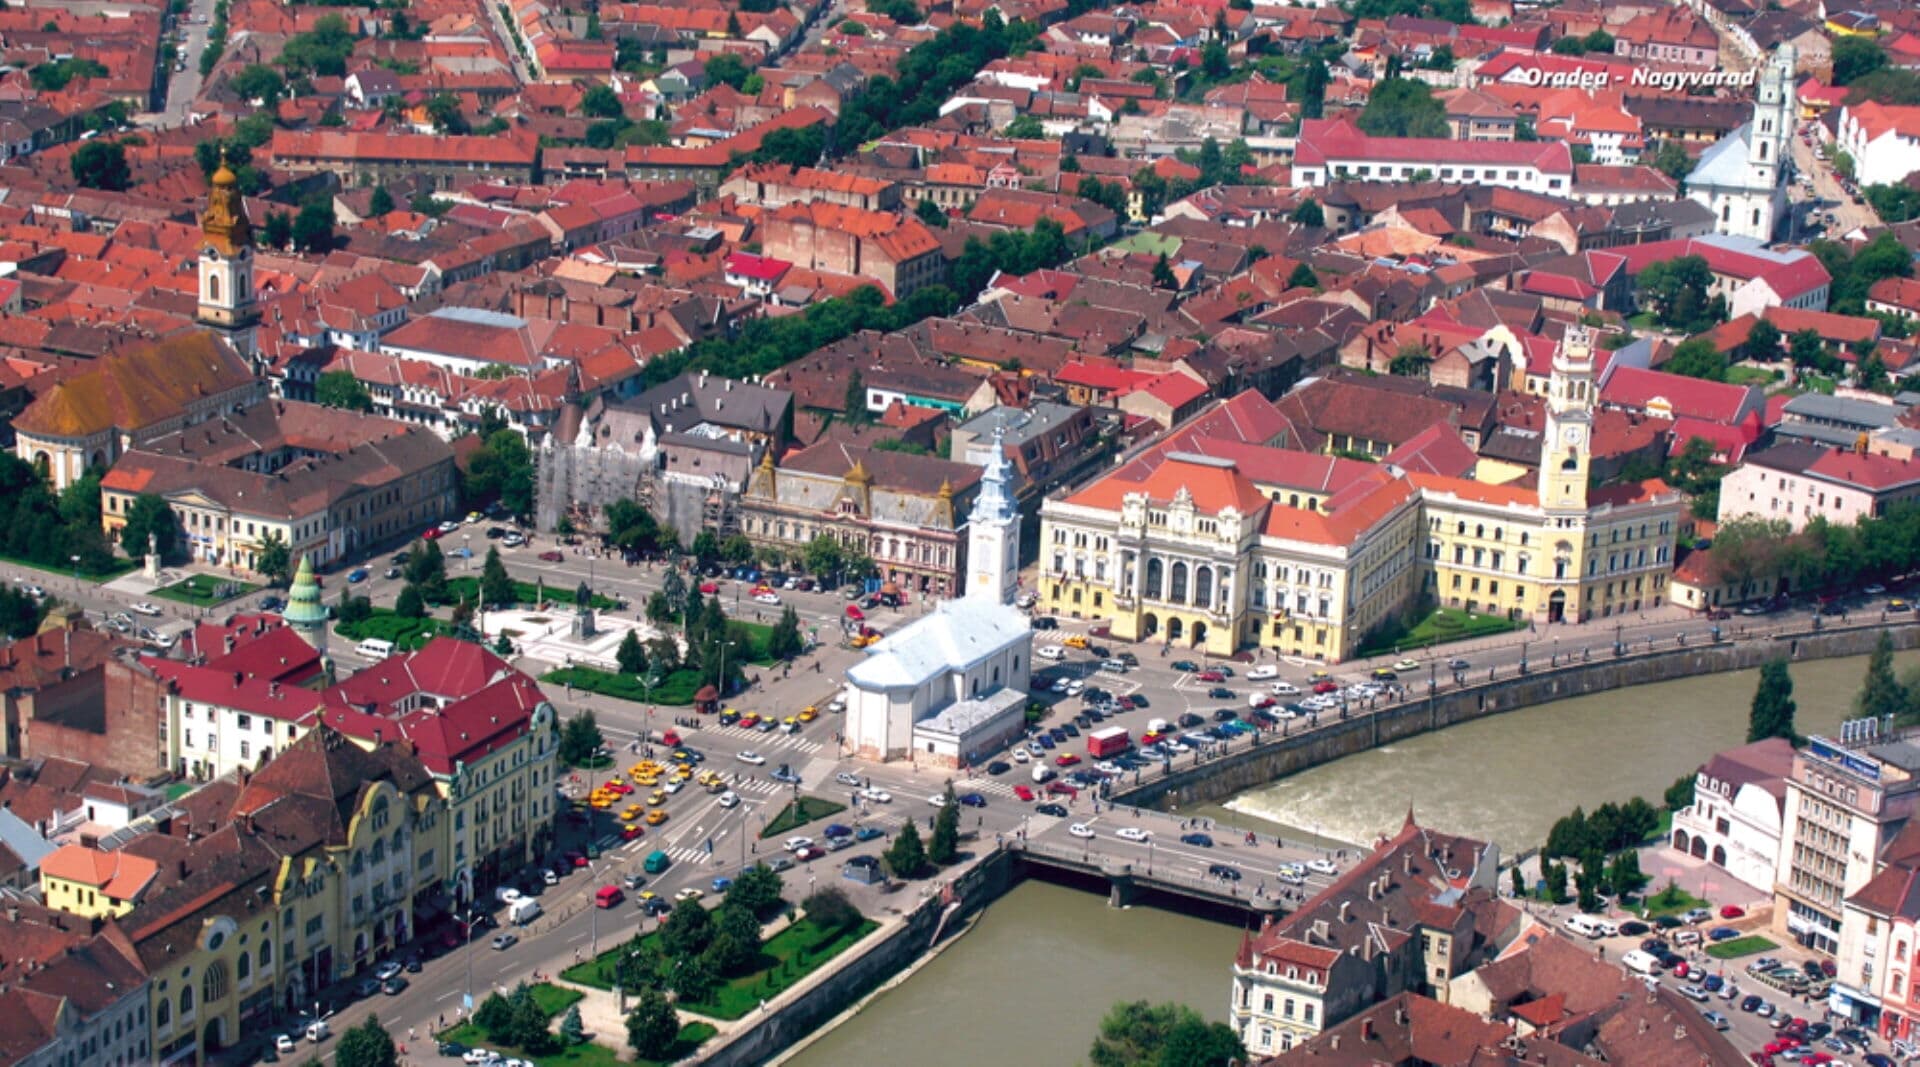 Oradea photo